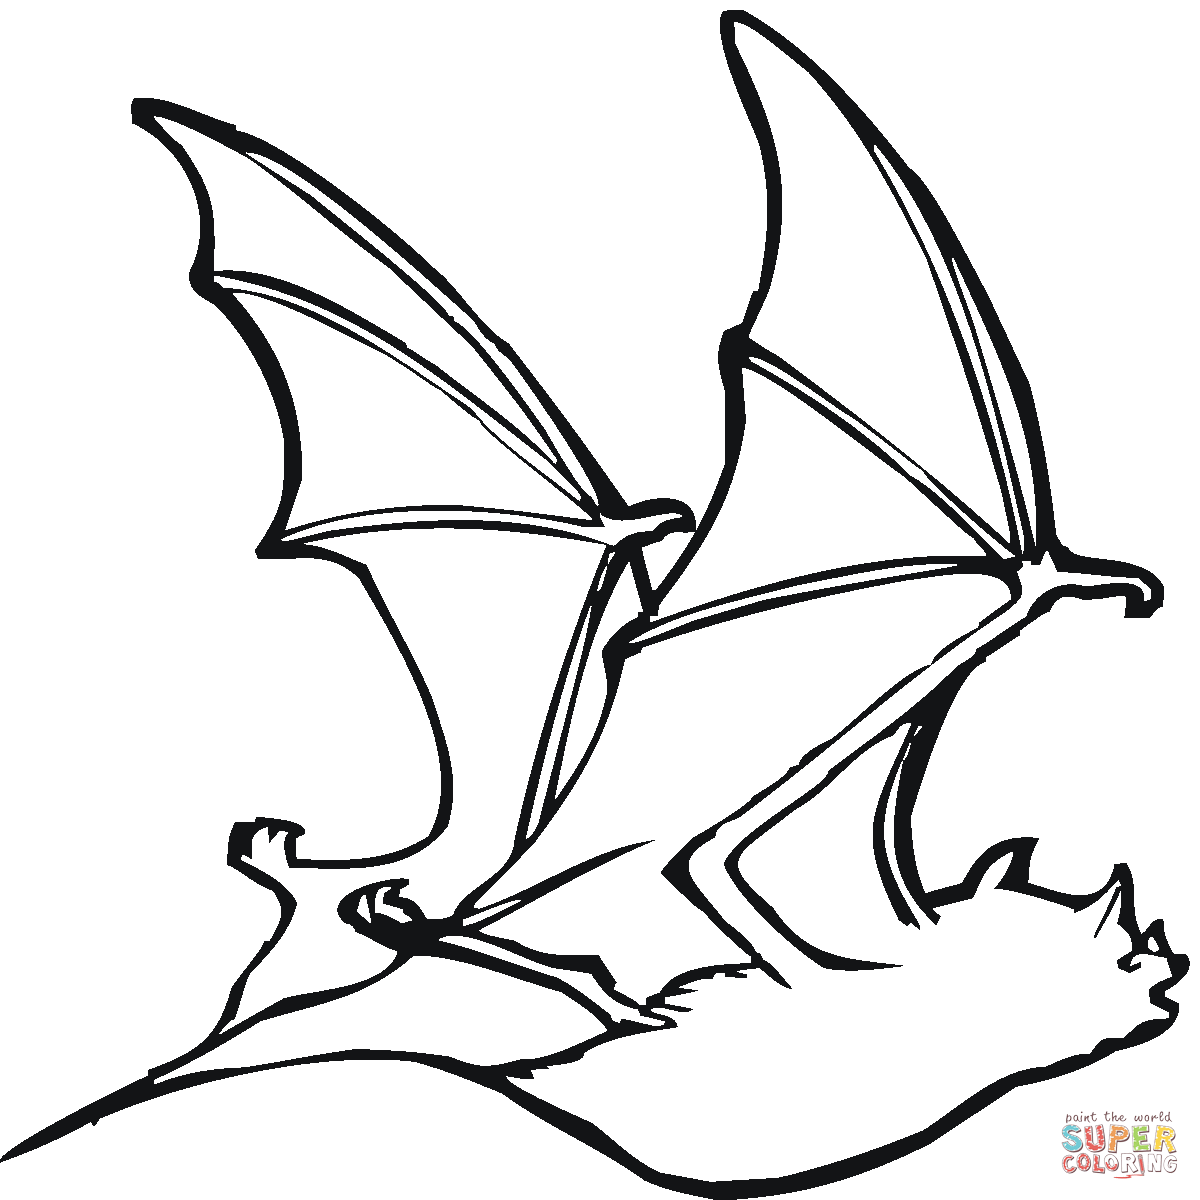 Fruit Bat Drawing at GetDrawings | Free download